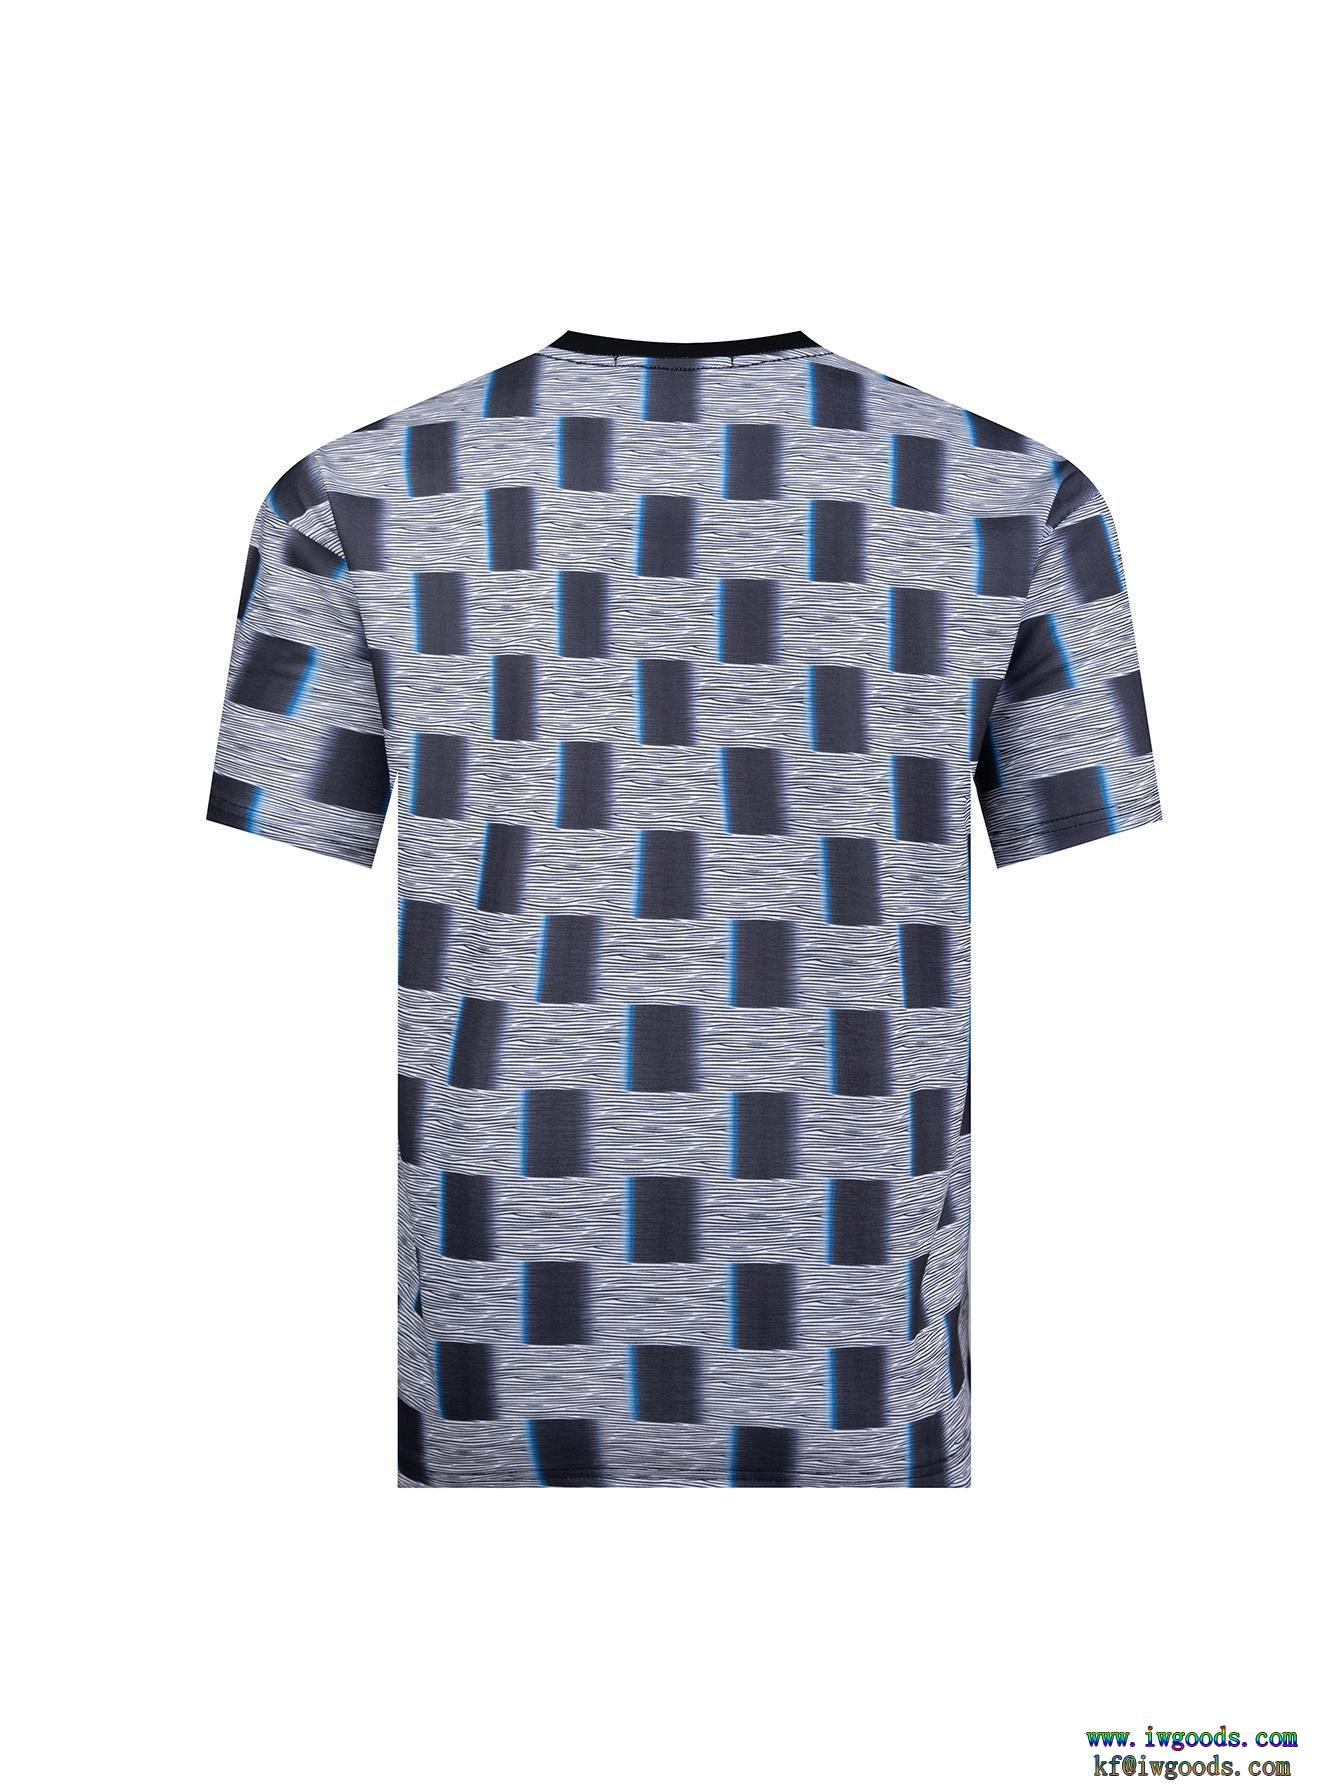 半袖Tシャツ【ユニセックス】ブランド 激安在庫処分SALE新作限定便利でめちゃ可愛ルイヴィトンLOUIS VUITTON